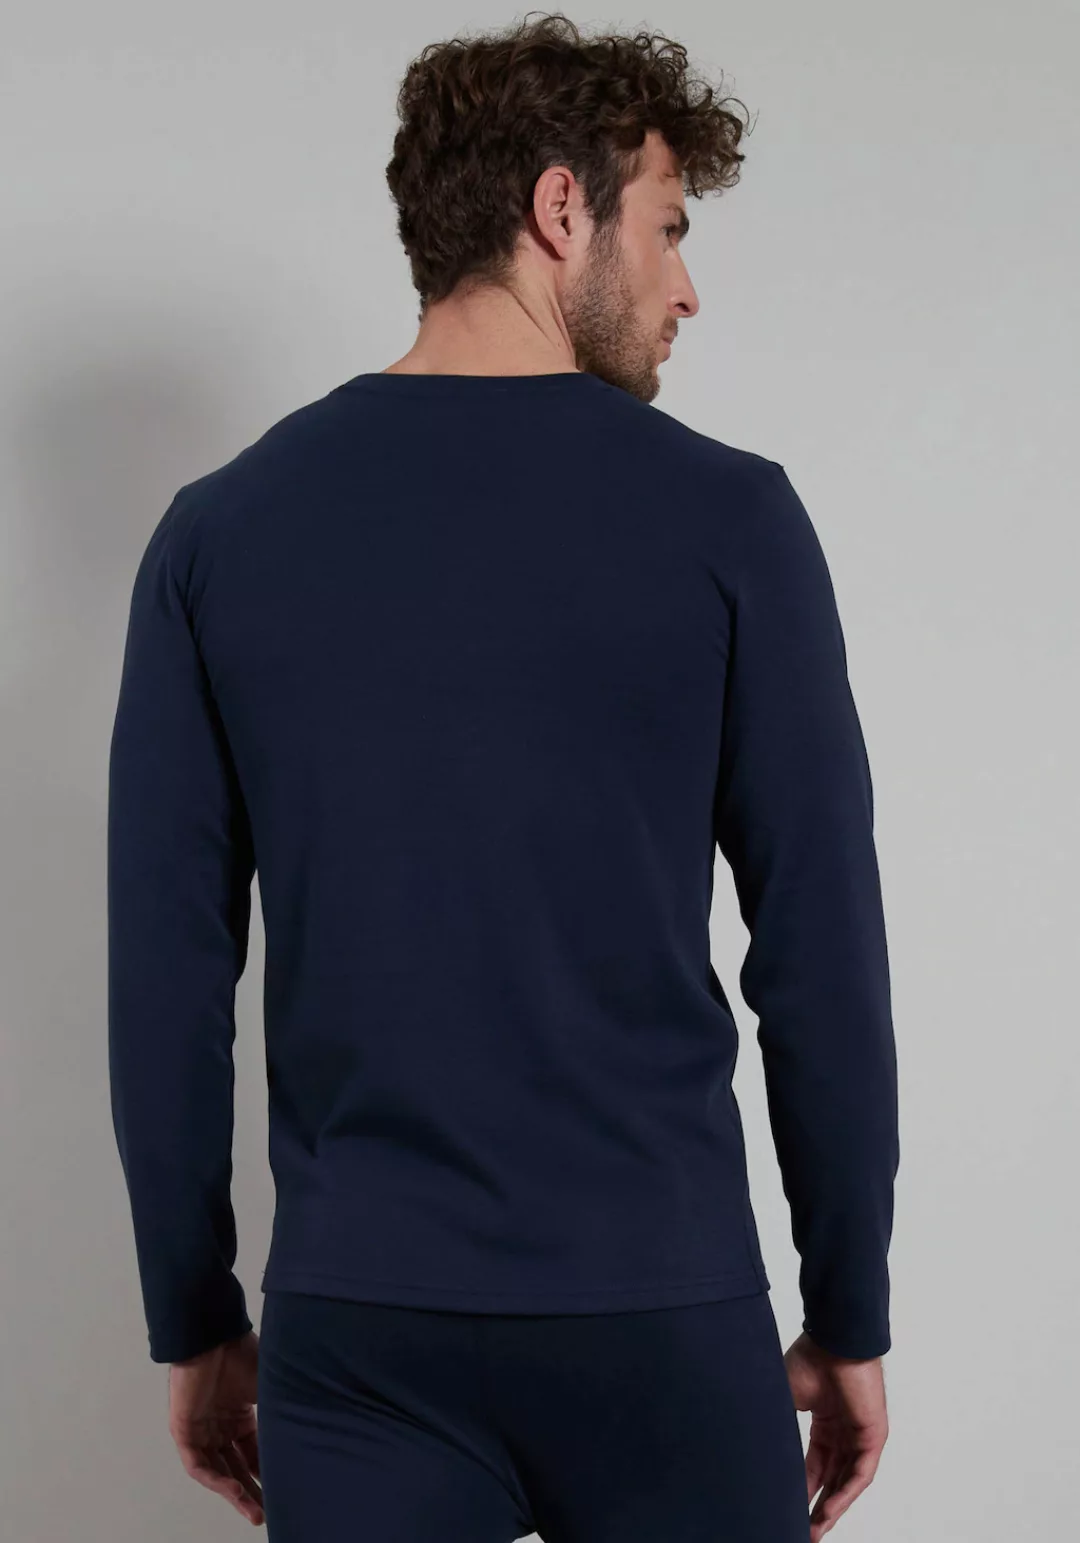 GÖTZBURG Unterhemd, mit körpernahem Fit perfekt für jeden Tag günstig online kaufen